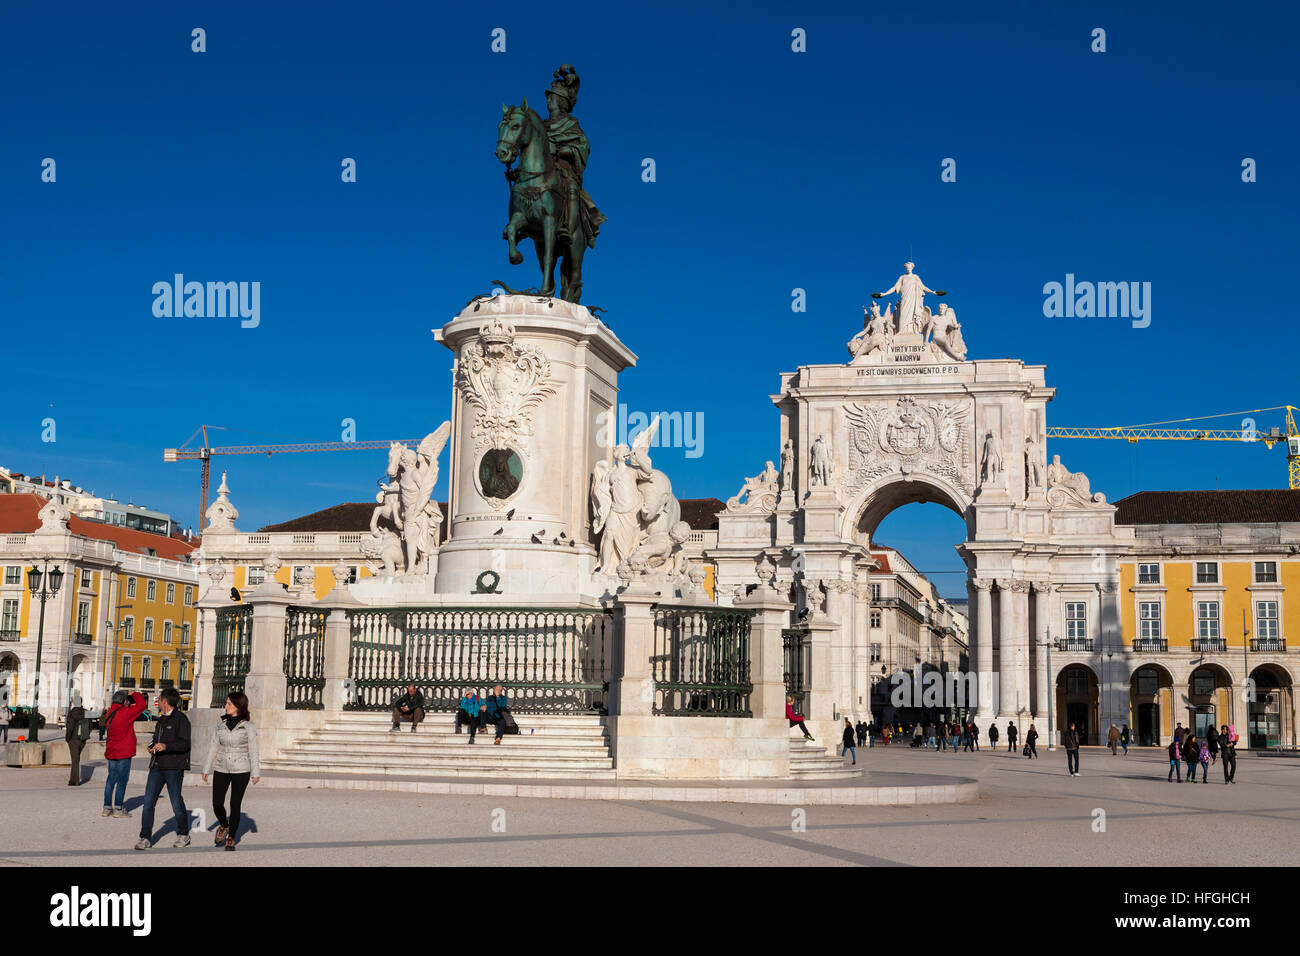 Statua equestre di Dom José I, Praça do Comércio, Lisbona, Portogallo Foto Stock